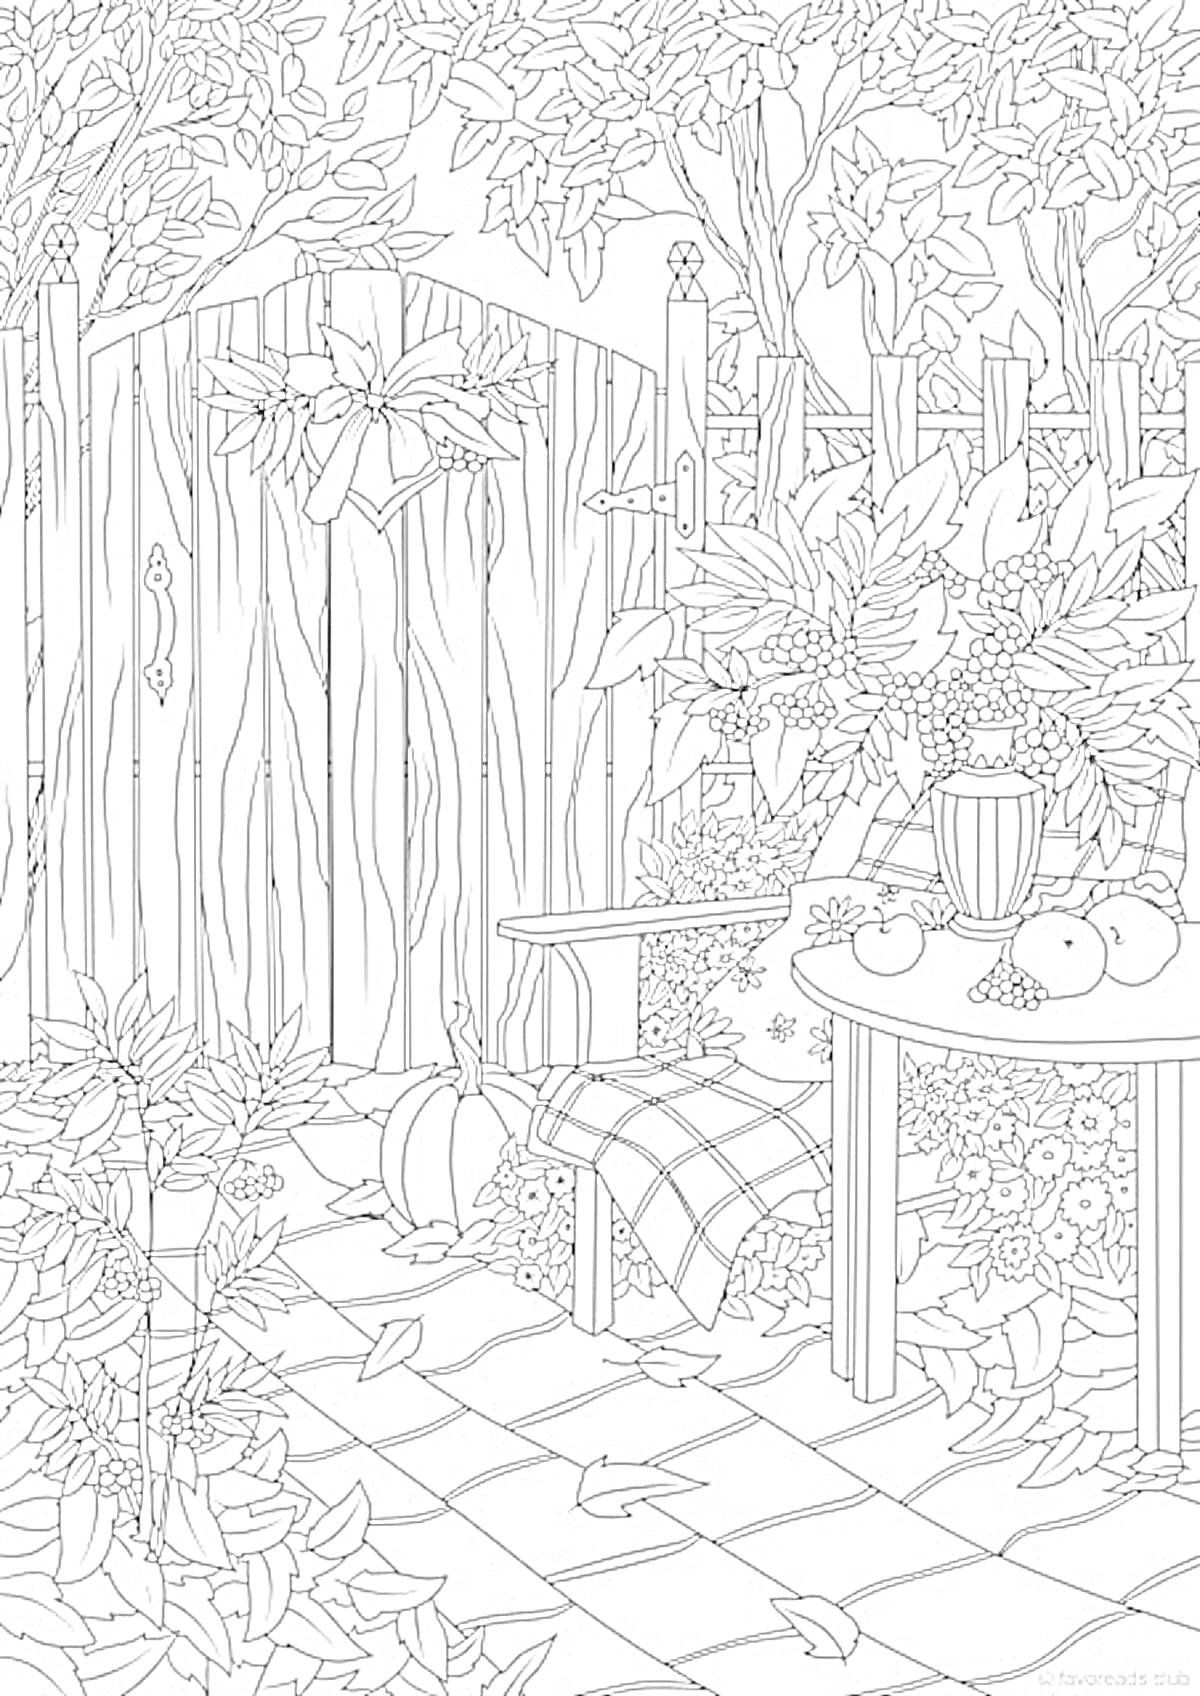 Раскраска Садовый уголок с фруктами и овощами на столе, стулом и оградой, окружённый деревьями и кустами